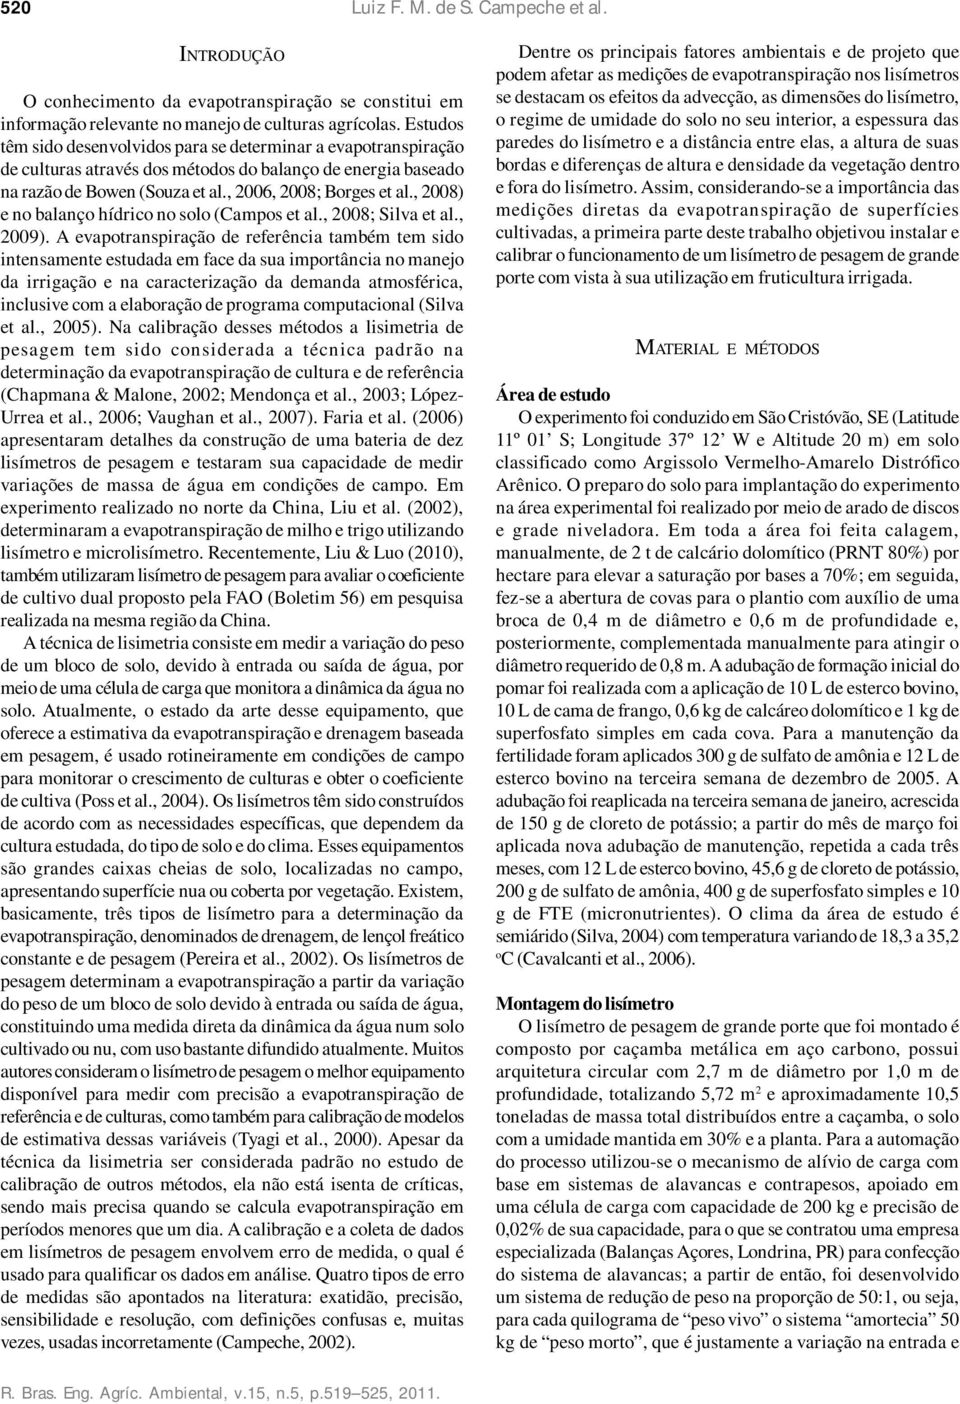 , 2008) e no balanço hídrico no solo (Campos et al., 2008; Silva et al., 2009).